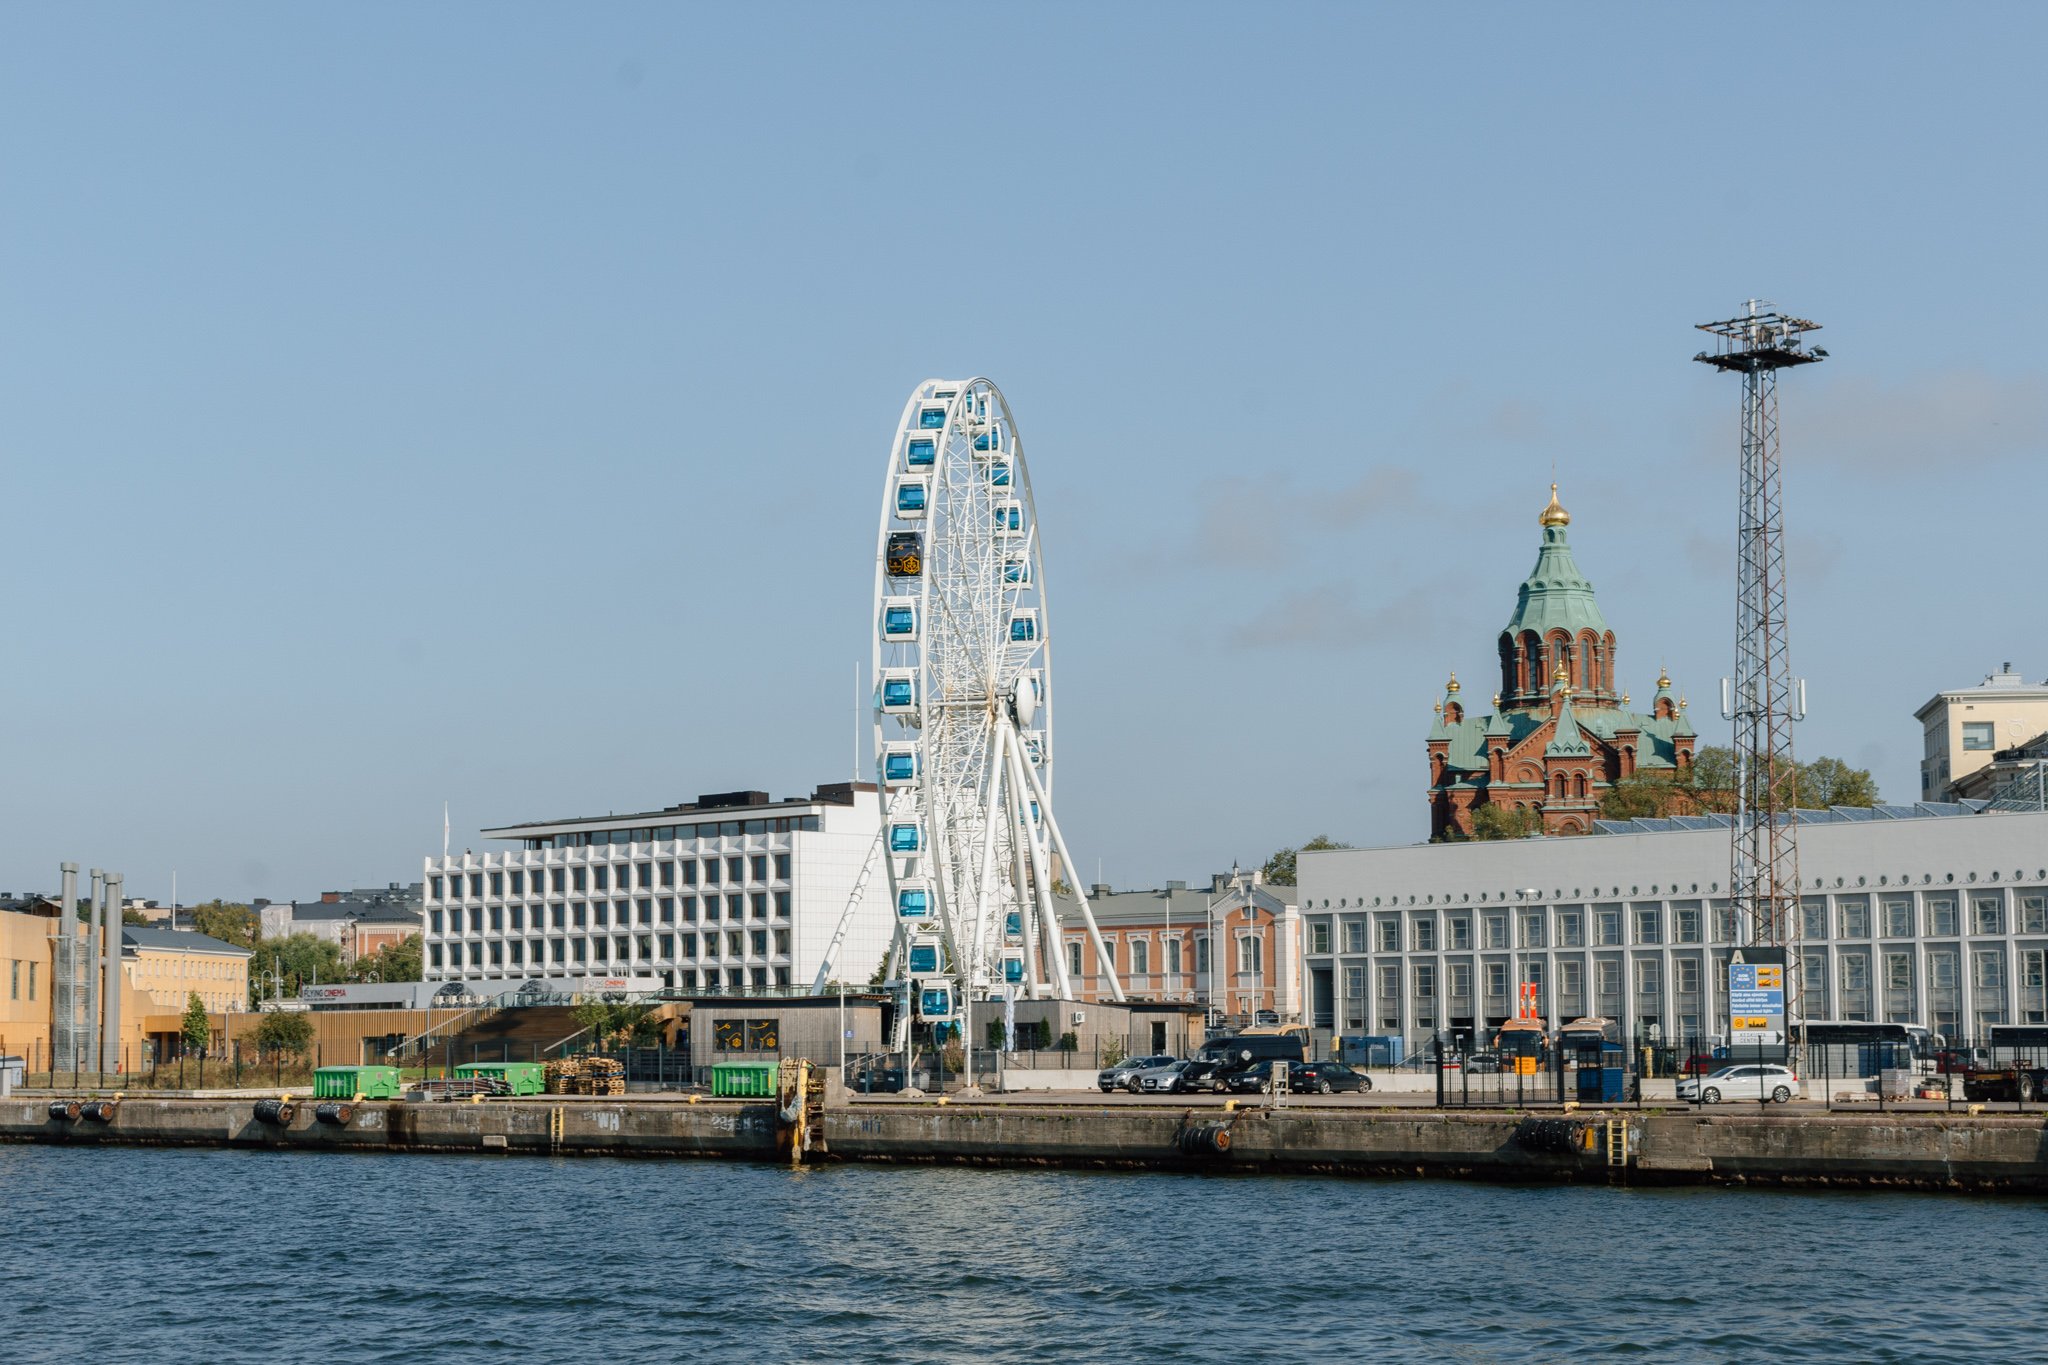 Helsinki's famous Ferris Wheel